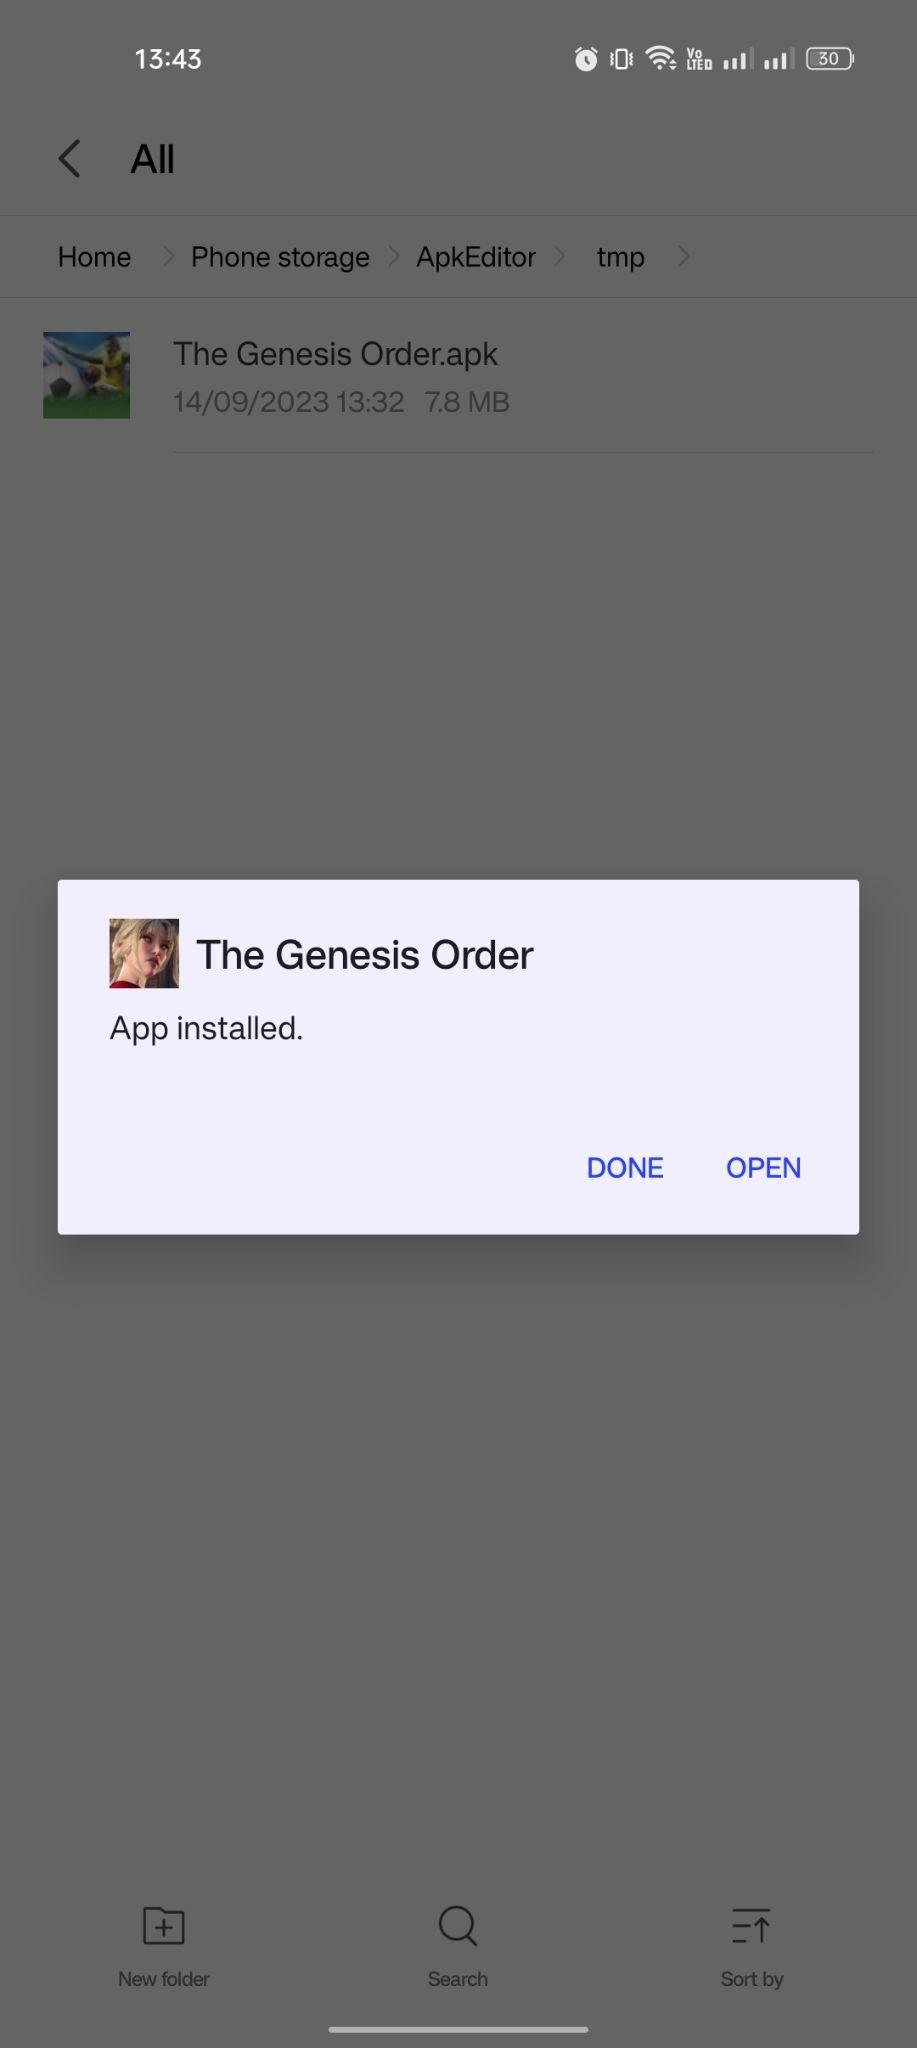 The Genesis Order apk installed